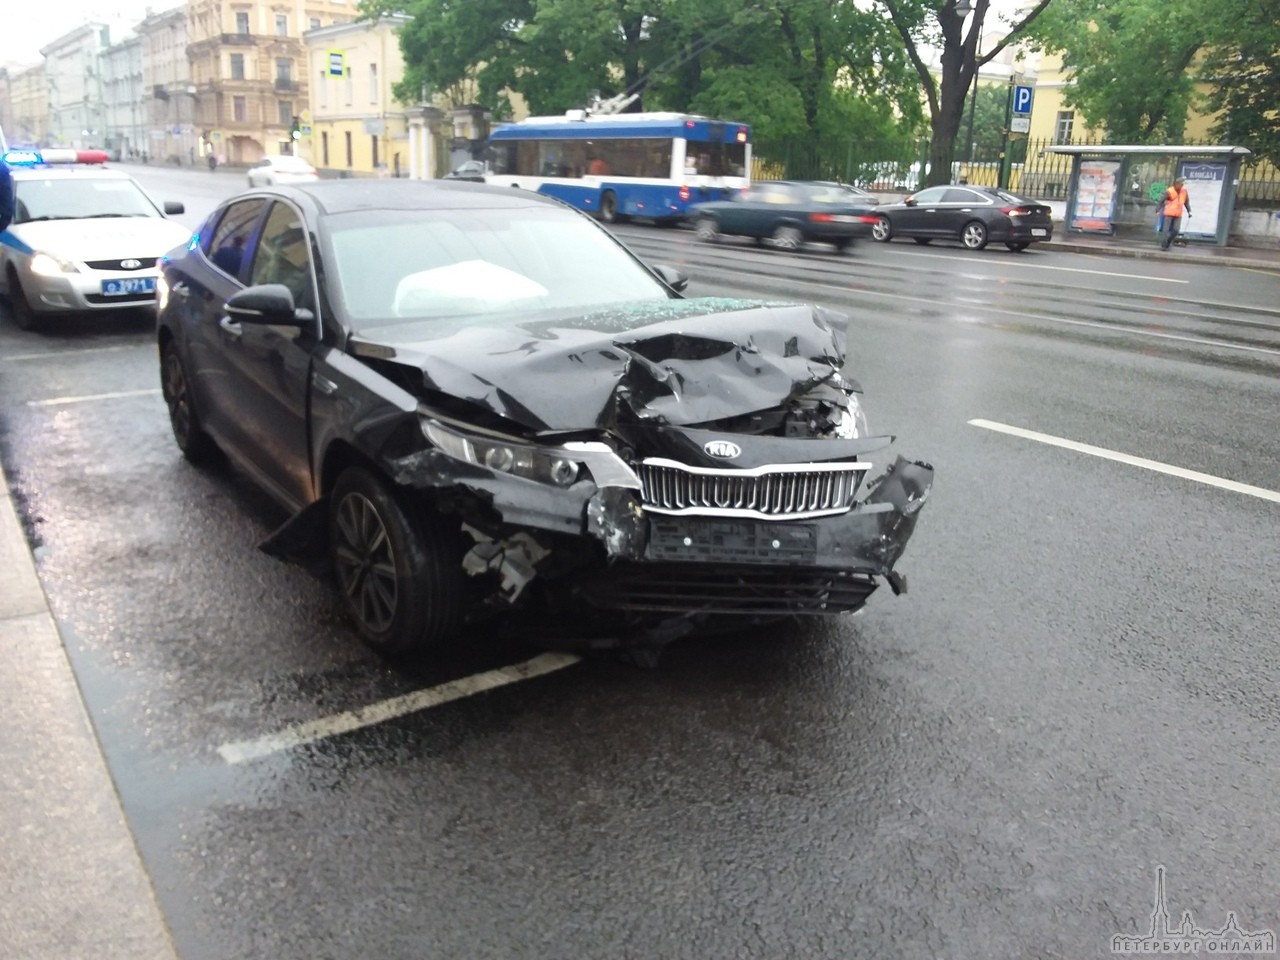 Напротив Мариининской больницы КИА подбила разворачивающийся Volkswagen. Машины уже убрали с центра...